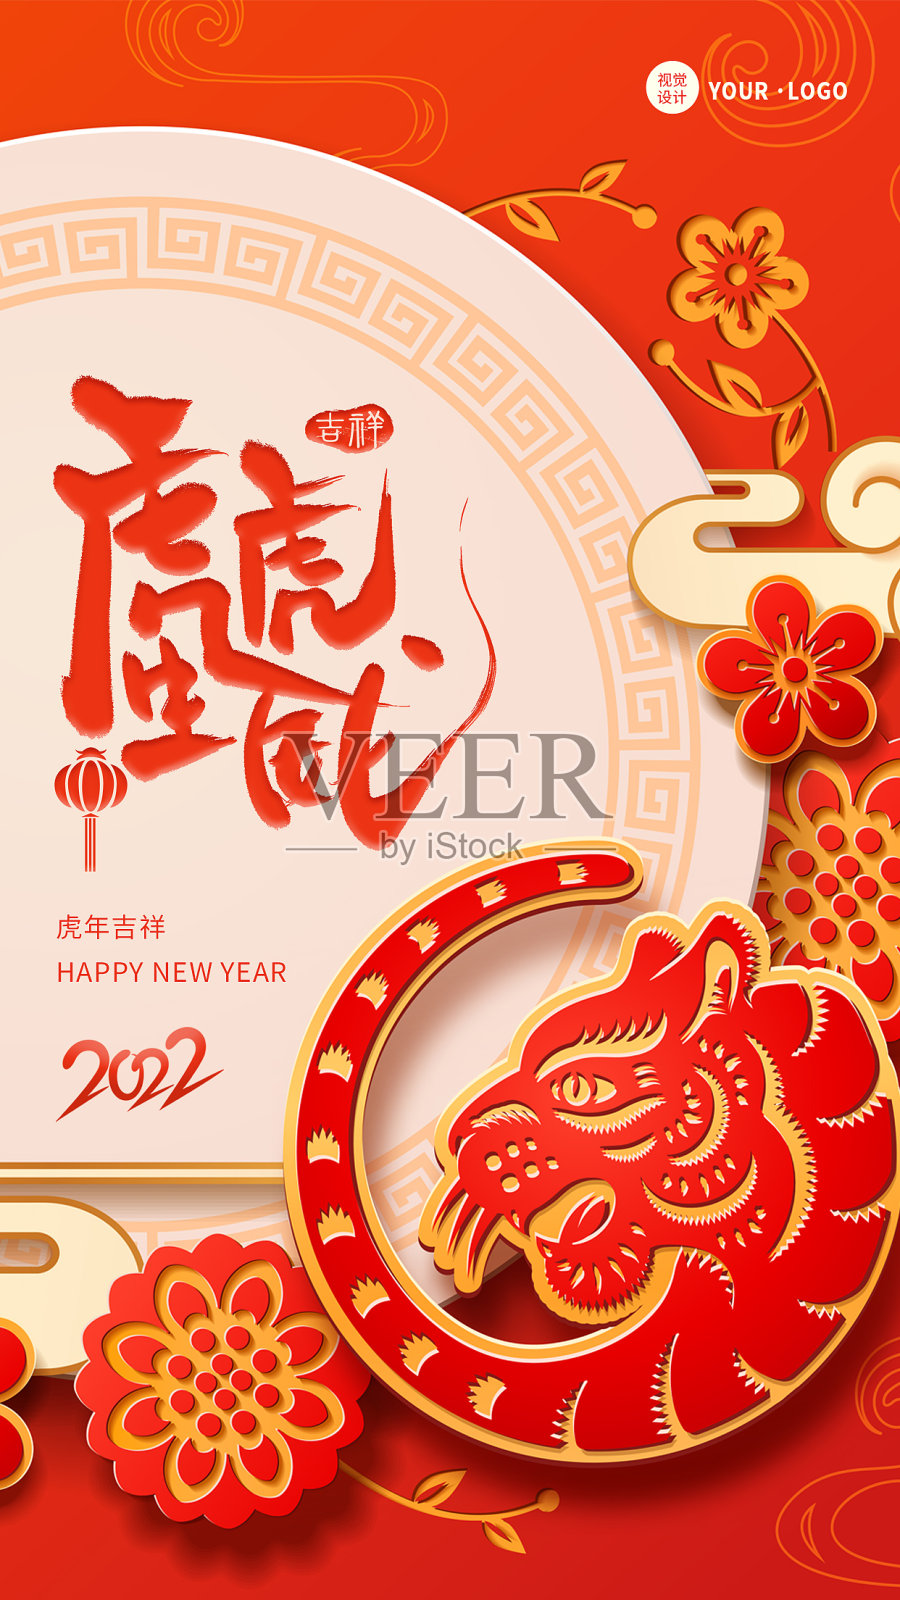 红色大气剪纸虎年春节新年祝福手机海报设计模板素材